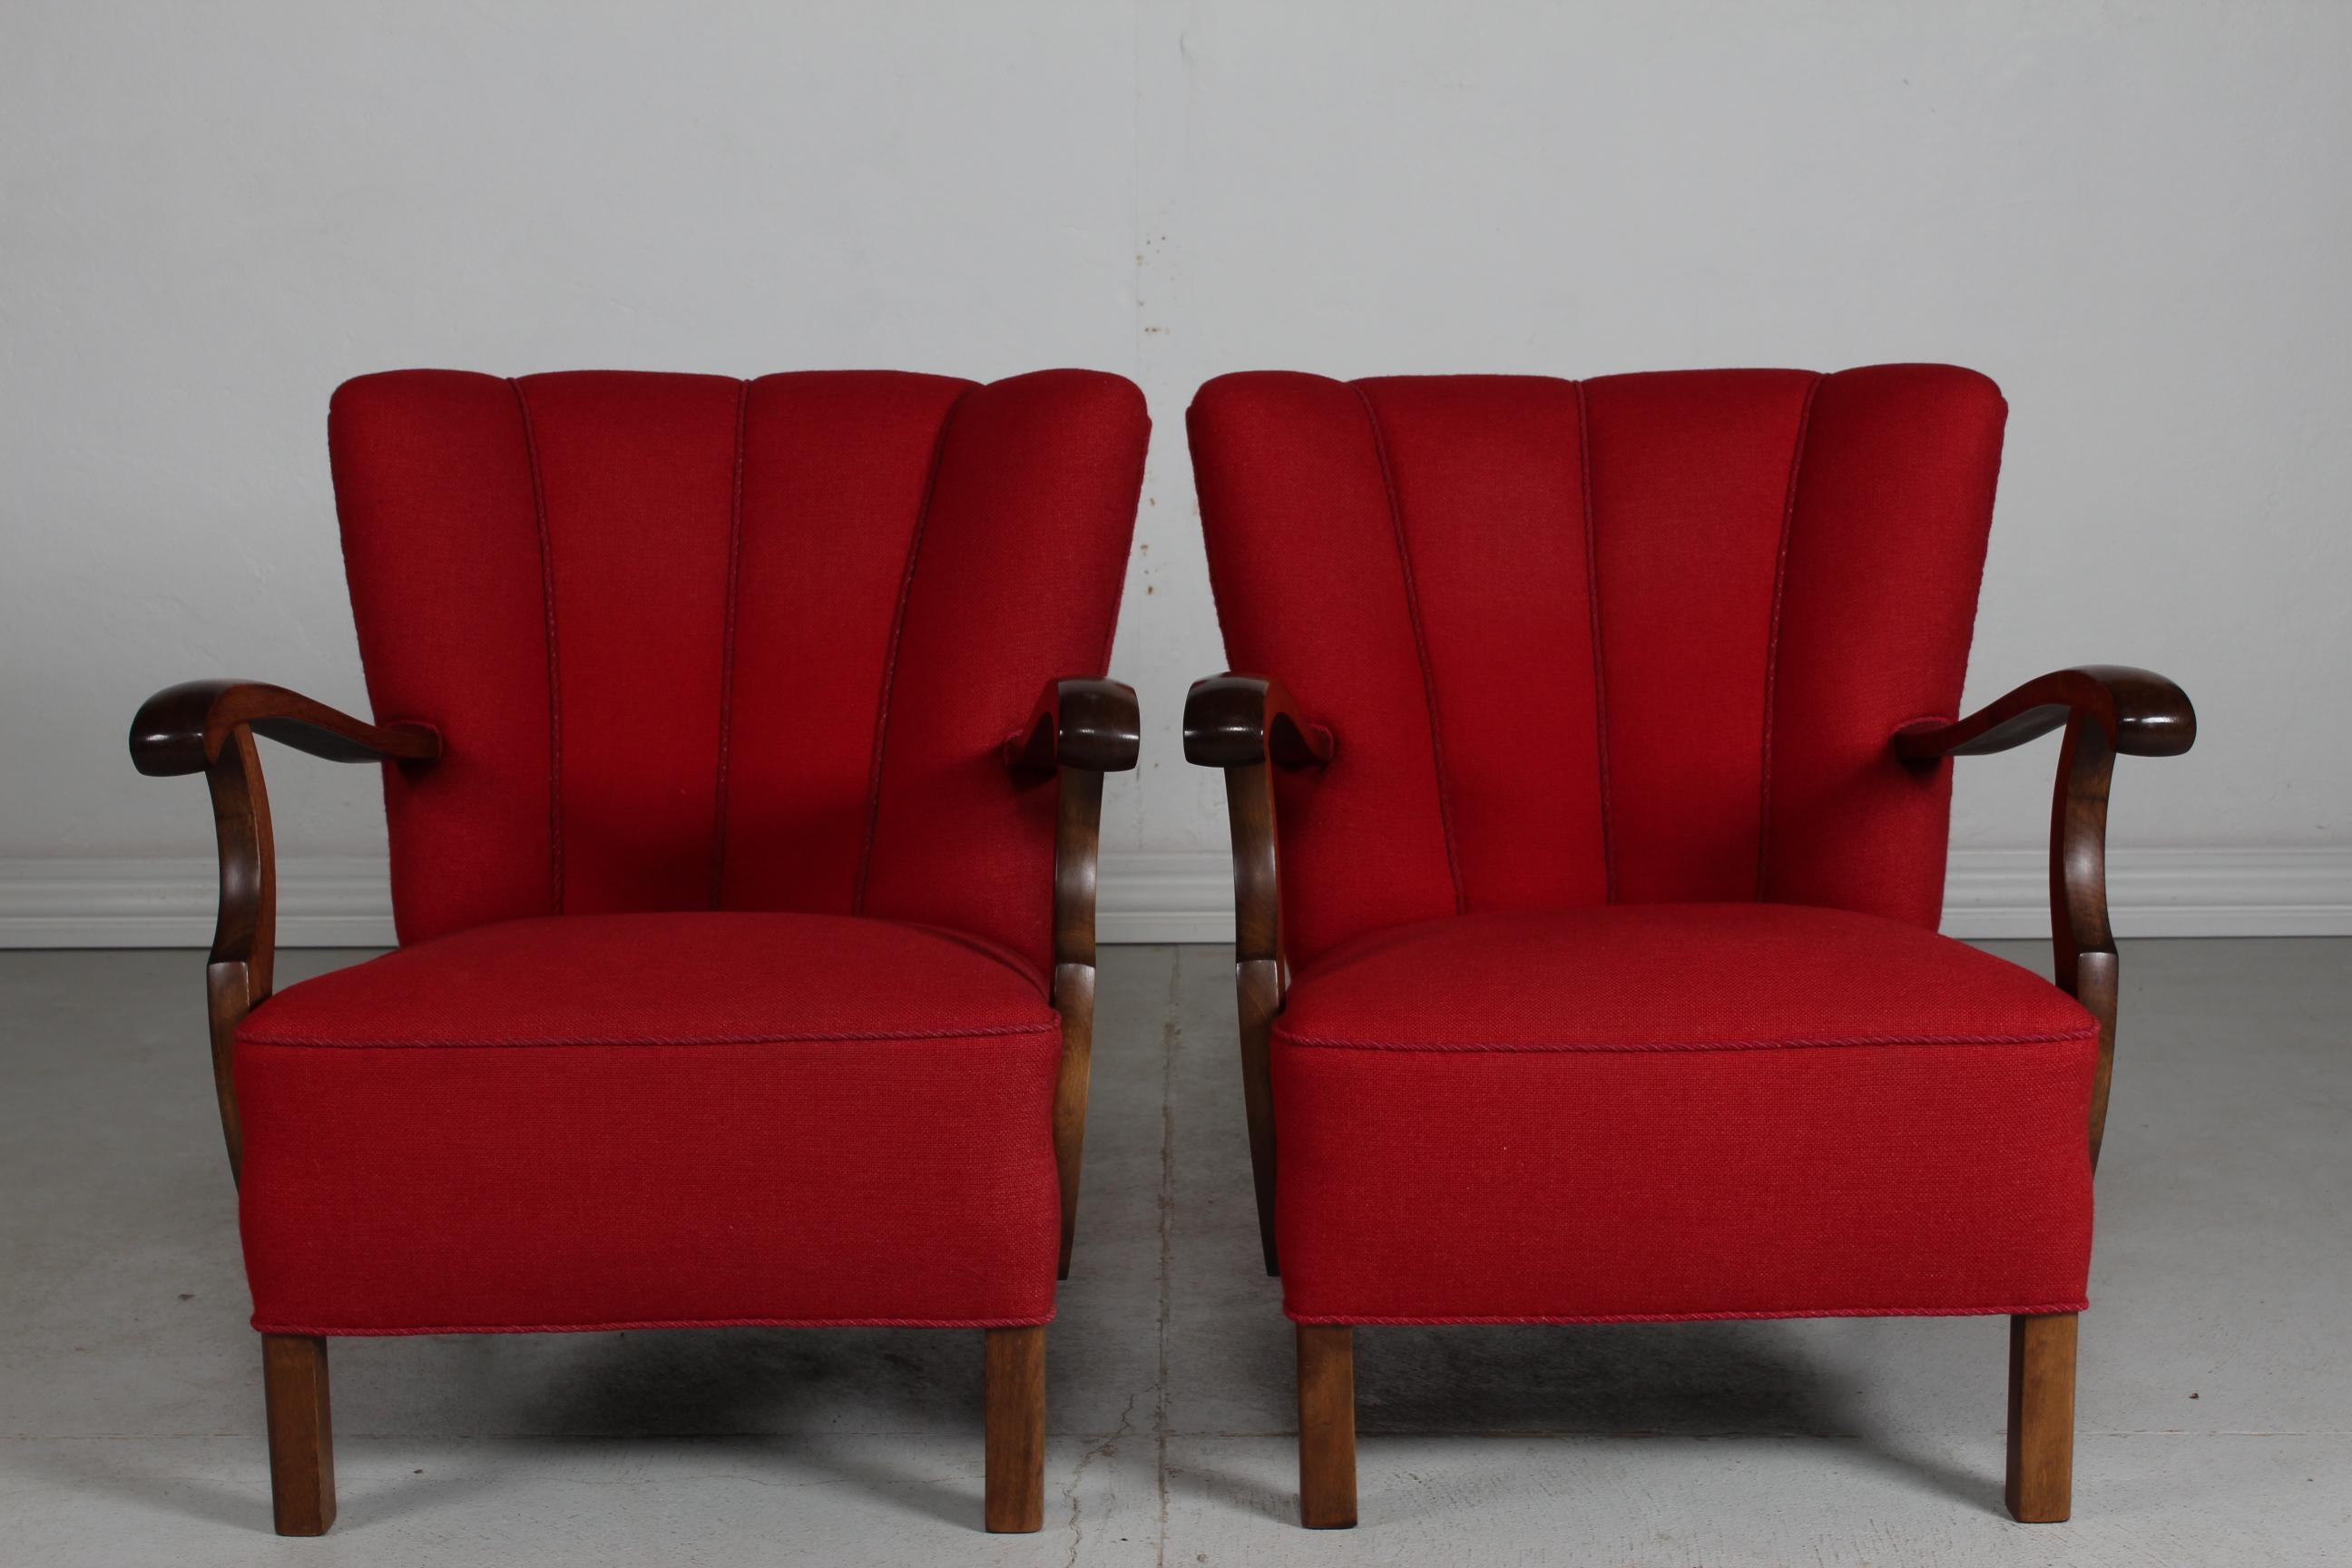 Voici une paire de fauteuils et chaises longues Art Déco de style Viggo Boesen des années 1930-1940. 
Ils sont réalisés avec un dossier ondulé en hêtre teinté foncé, tapissé de laine hallingdal rouge.
Fabriqué par un fabricant de meubles danois,